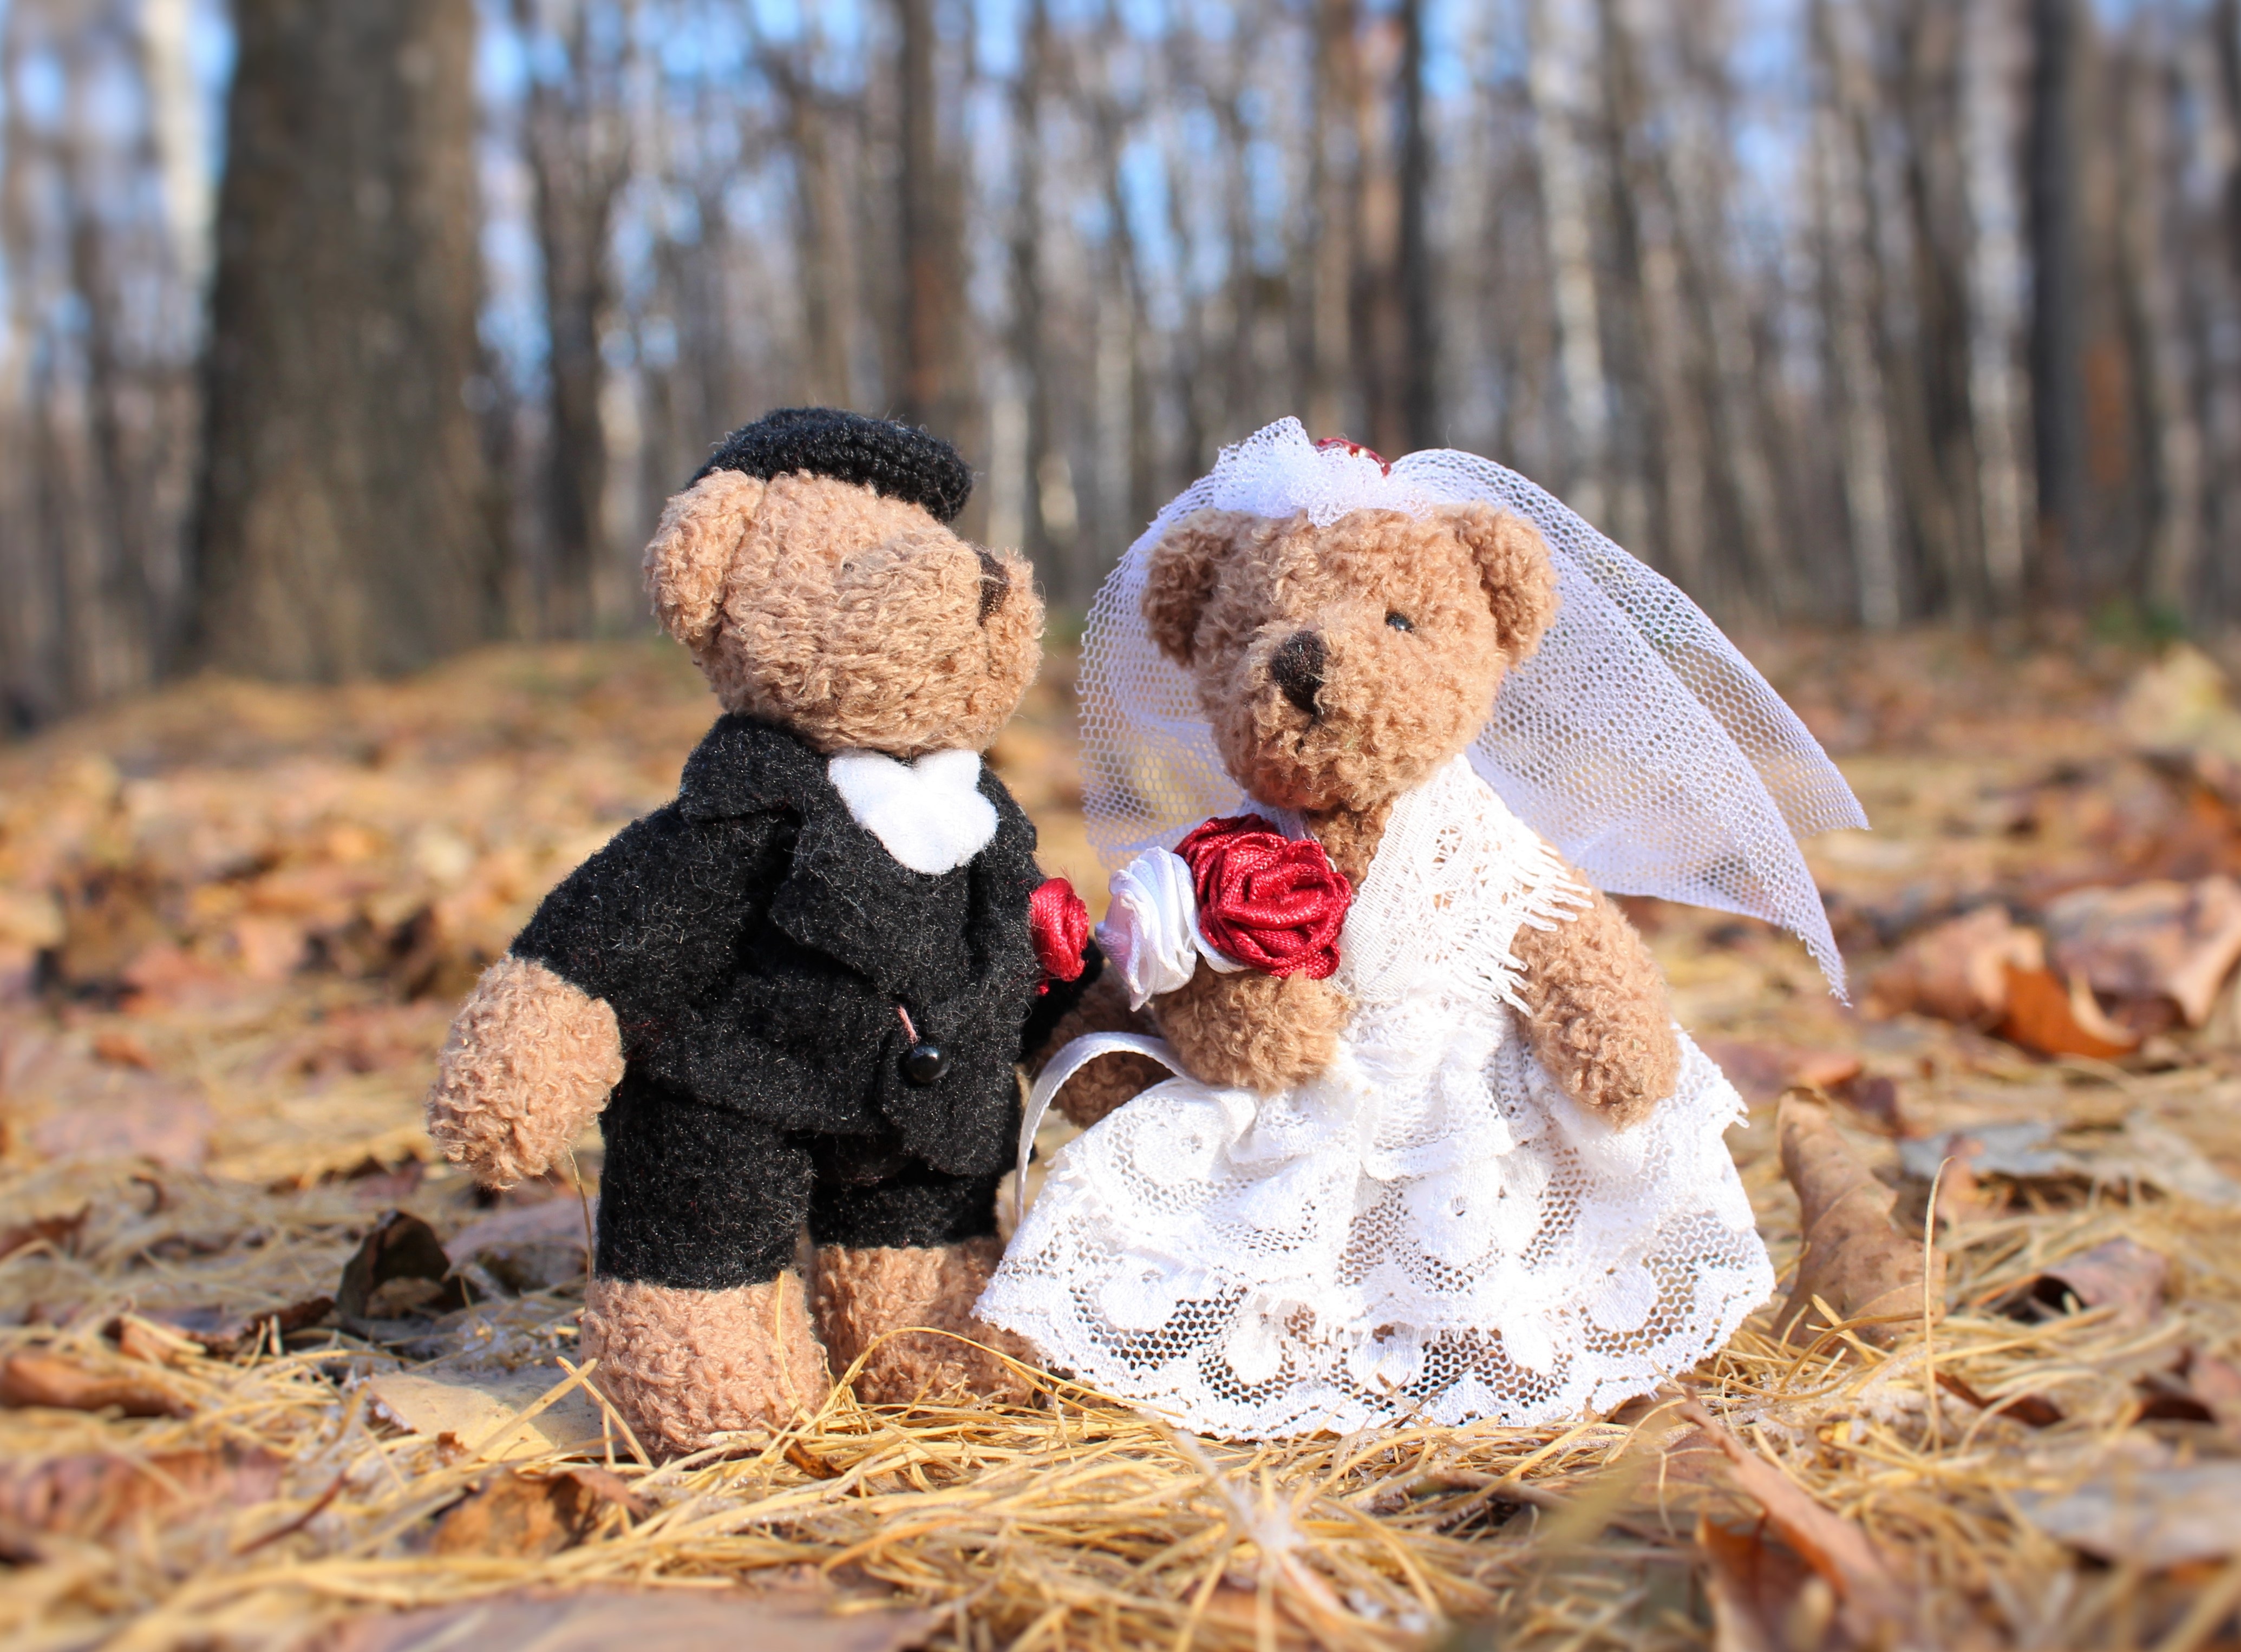 597 пар в сентябре зарегистрировали брак в Смоленской области